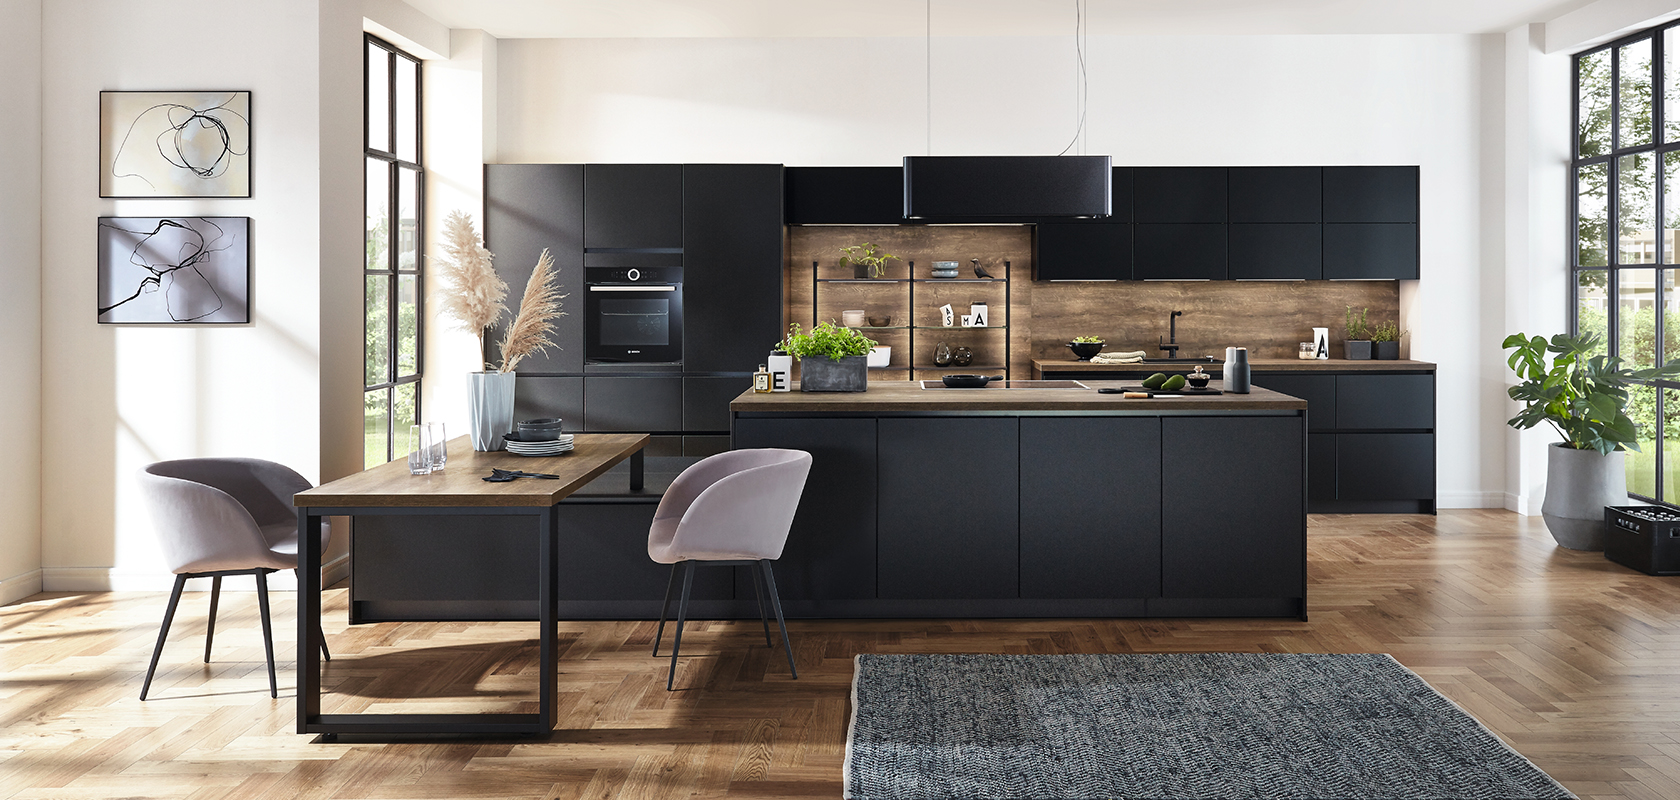 Interior de cocina moderna que muestra elegantes gabinetes negros, acentos de madera y una isla espaciosa complementada por luz natural de grandes ventanas.